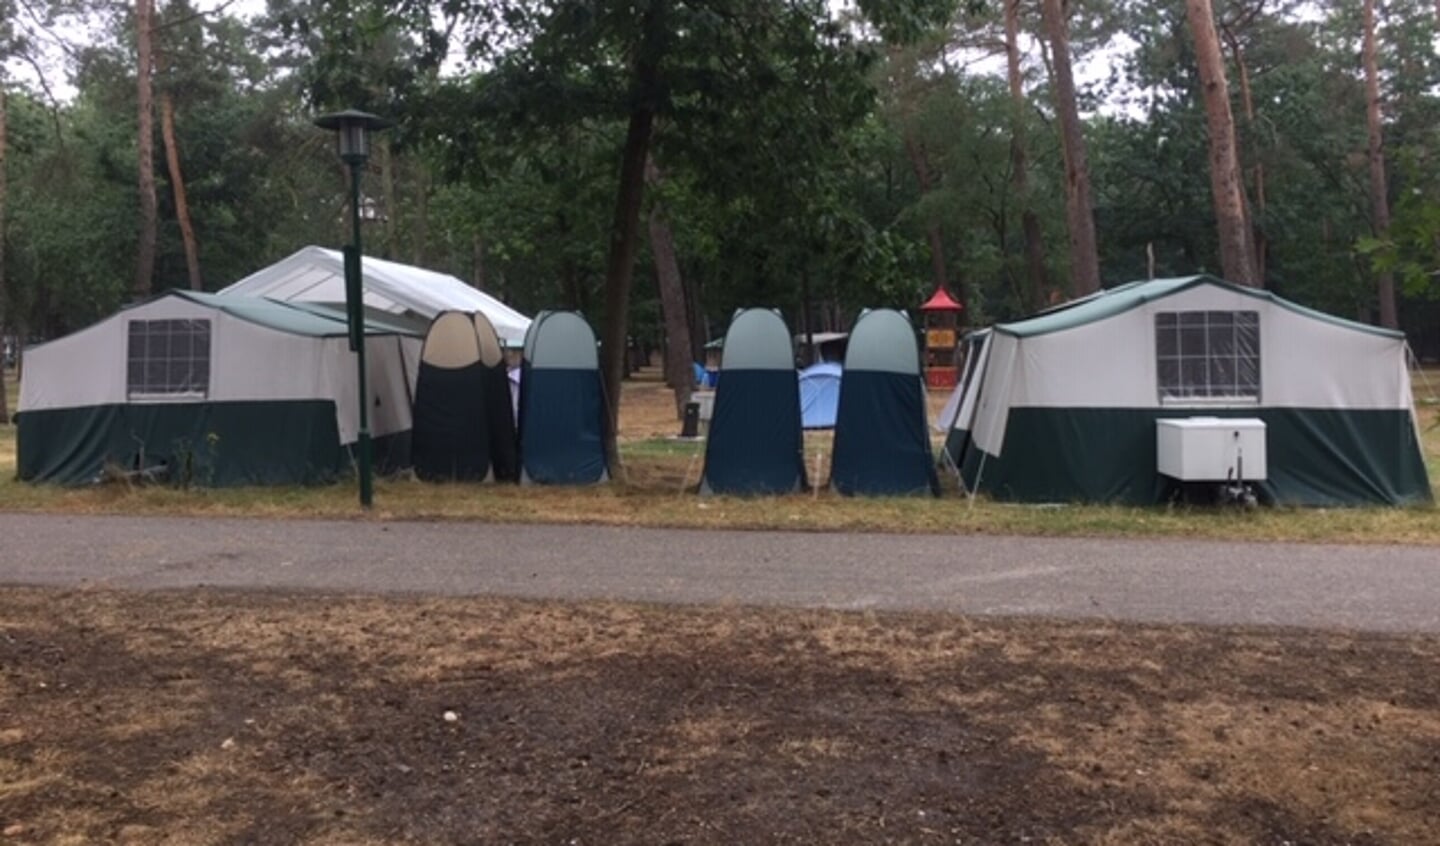 Gisteravond, 16 augustus, maakte ik deze foto op een camping in Arnhem.
Wat mij opviel is de symmetrie van deze tenten.
Echt over nagedacht!